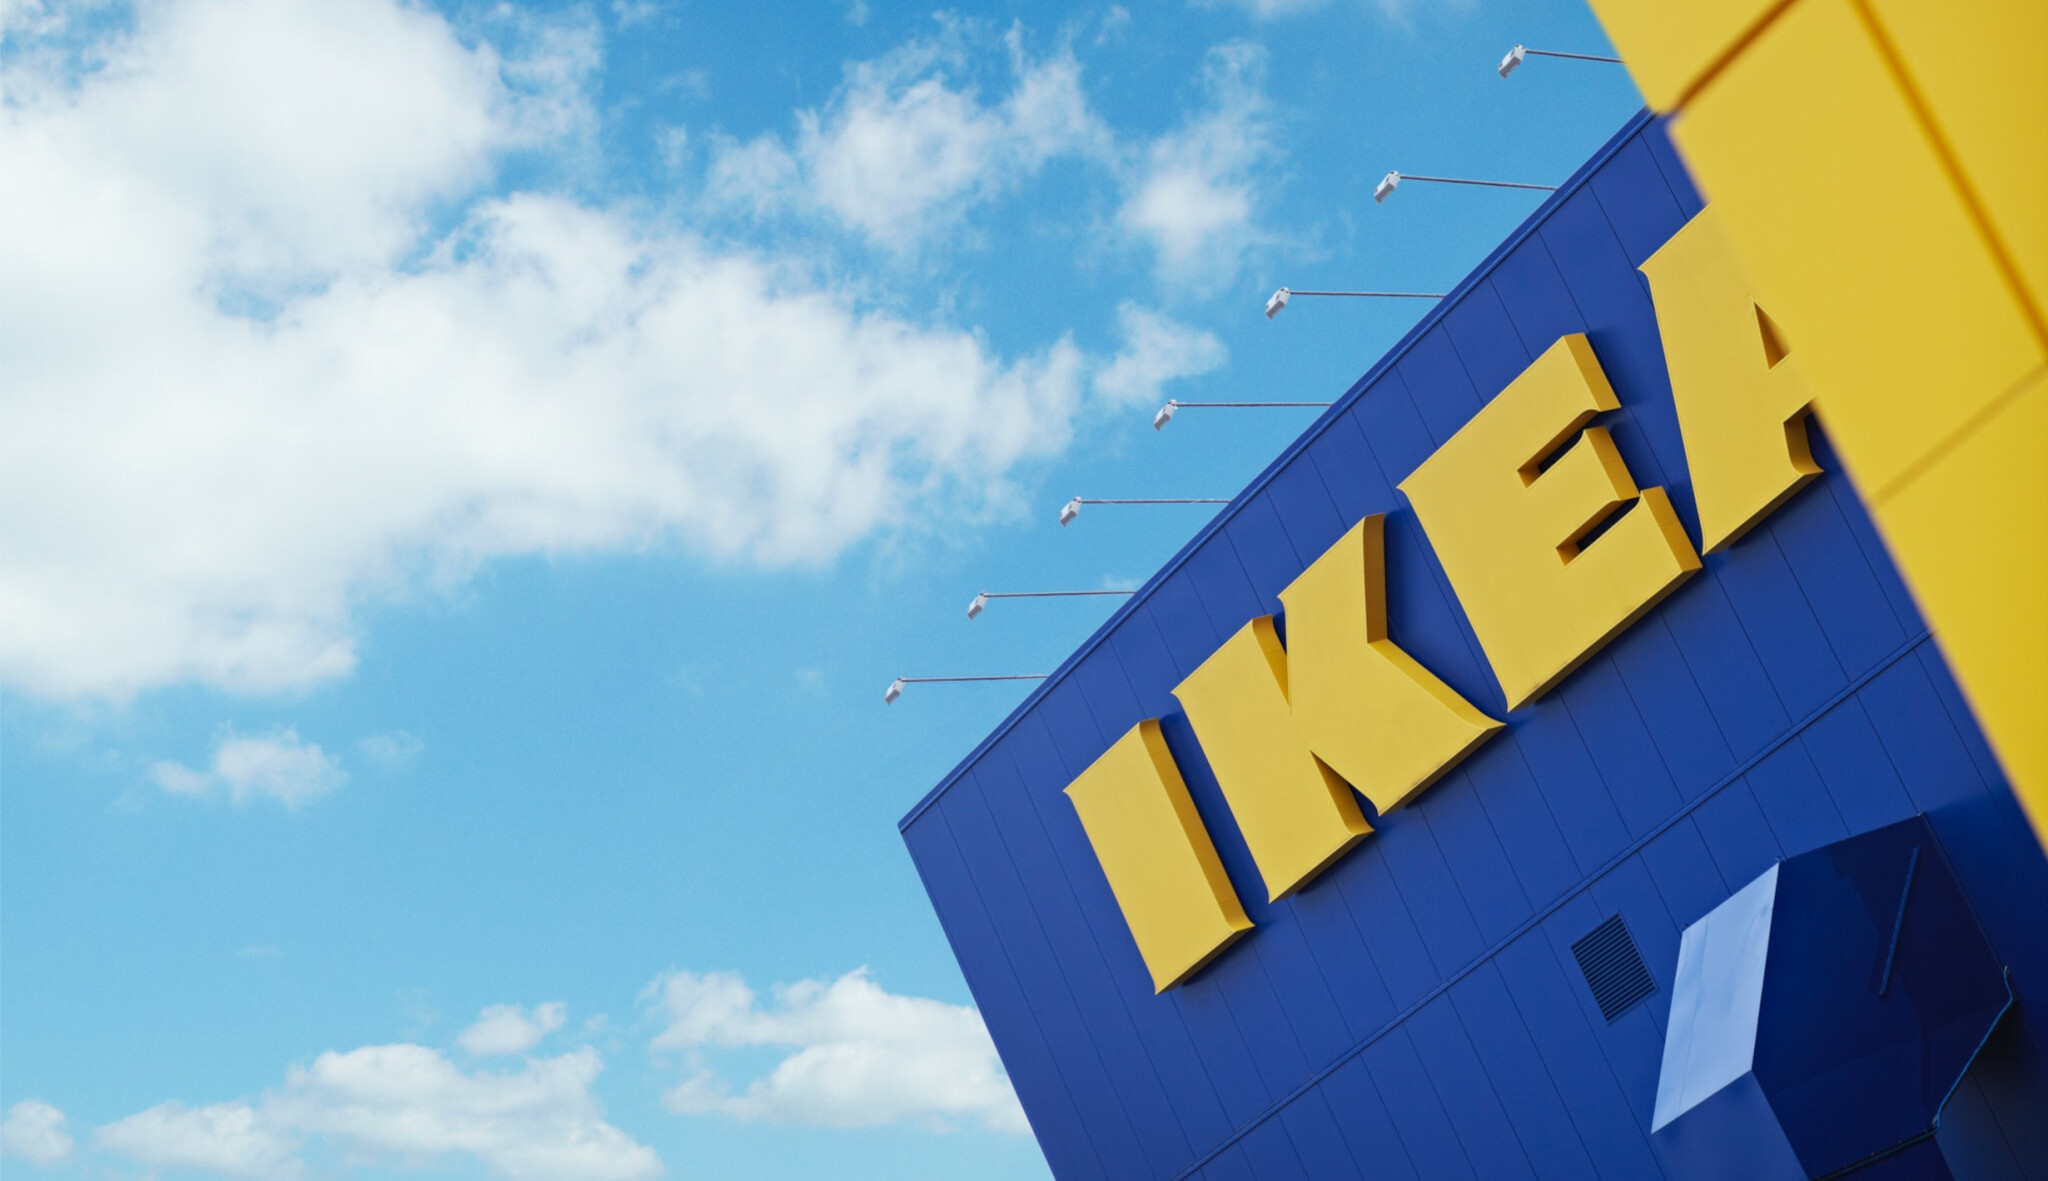 Udržitelnost po skandinávsku. IKEA začne nabízet zákazníkům obnovitelnou energii